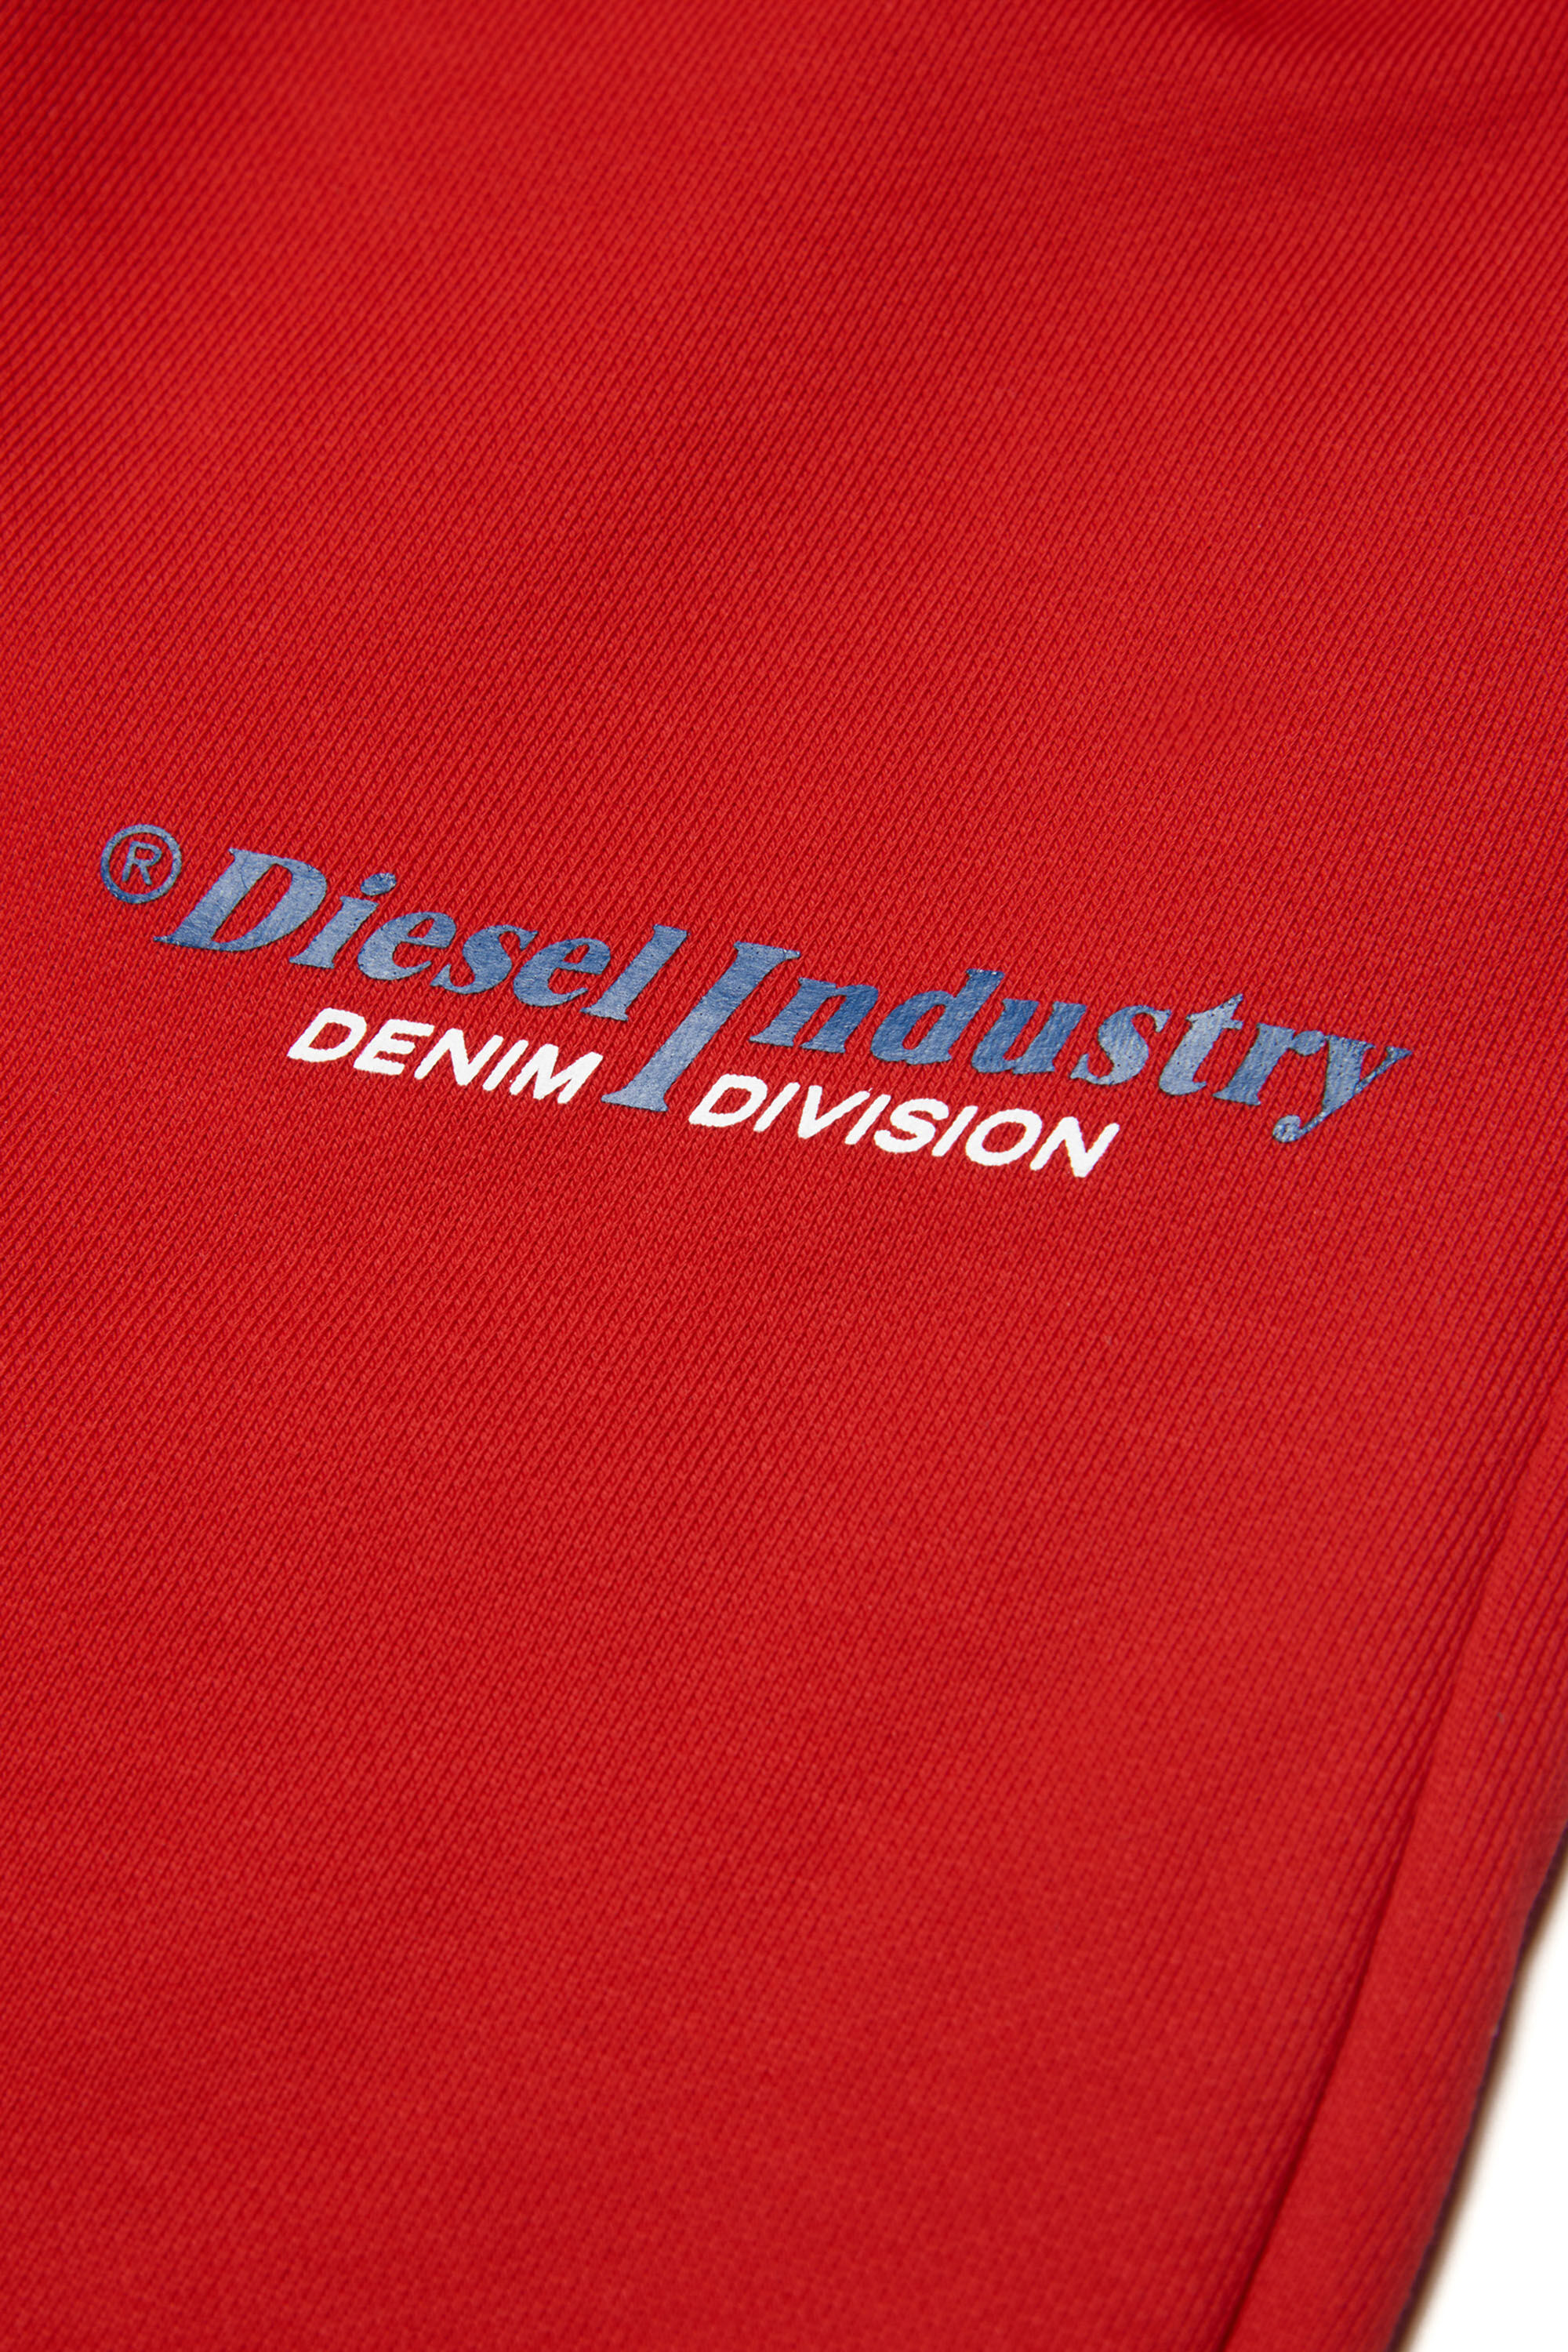 Diesel - PVENUSIND, Red - Image 3